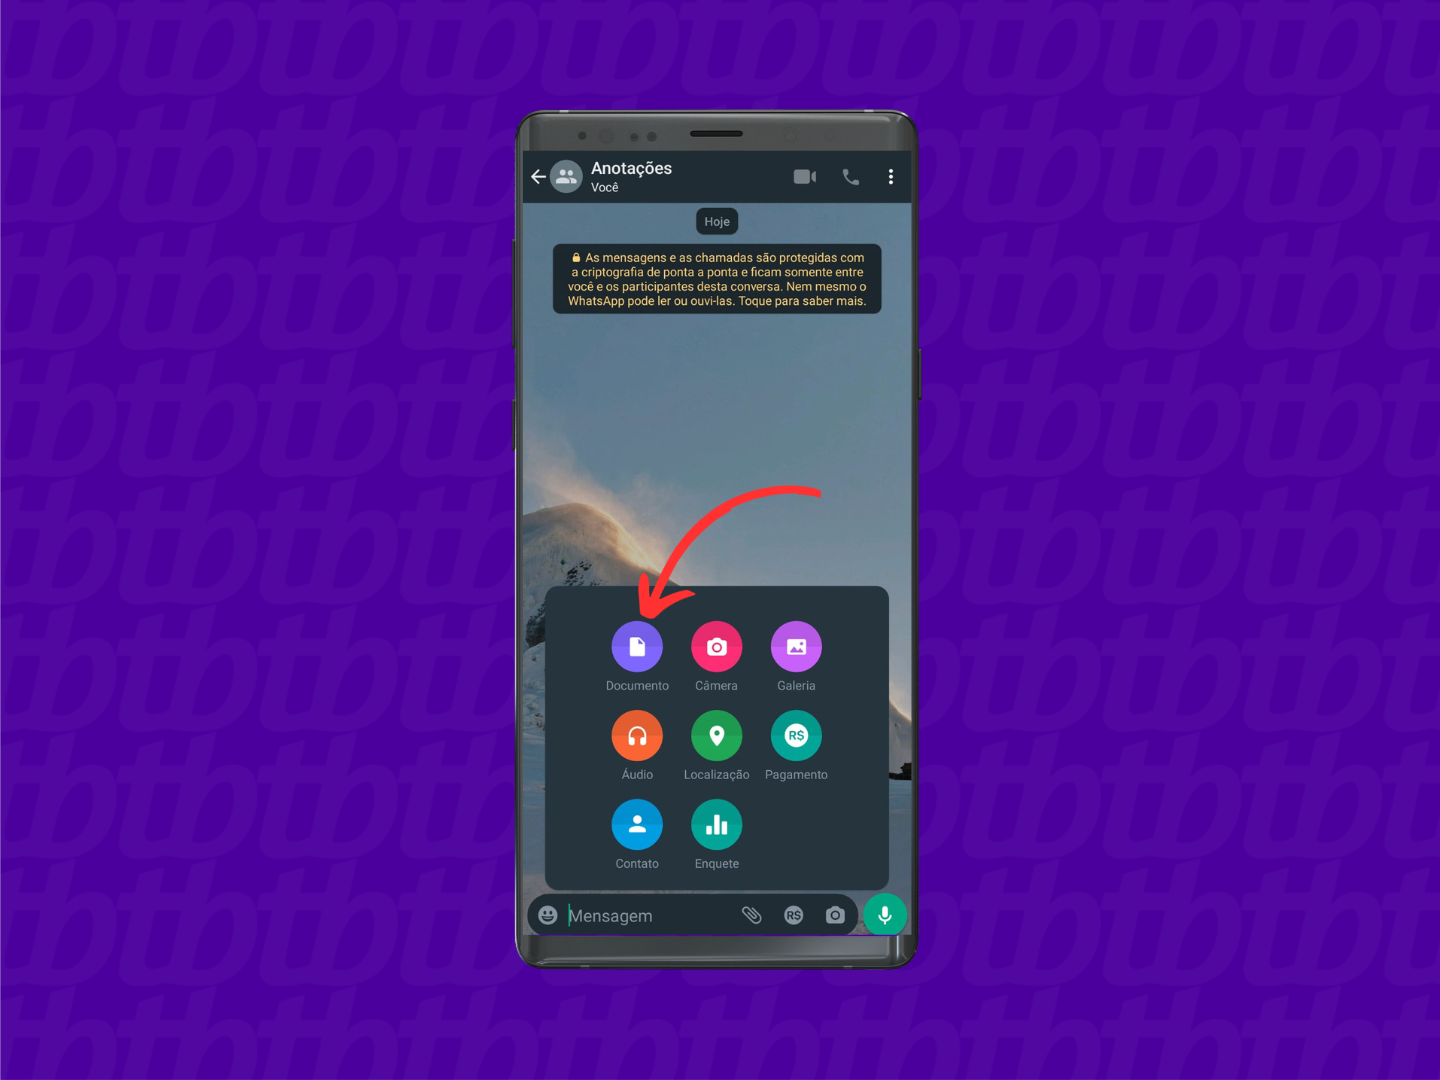 Mockup de celular Android com print de tela de uma conversa de WhatsApp. Uma seta indica o botão "Documentos" localizado no centro da tela.